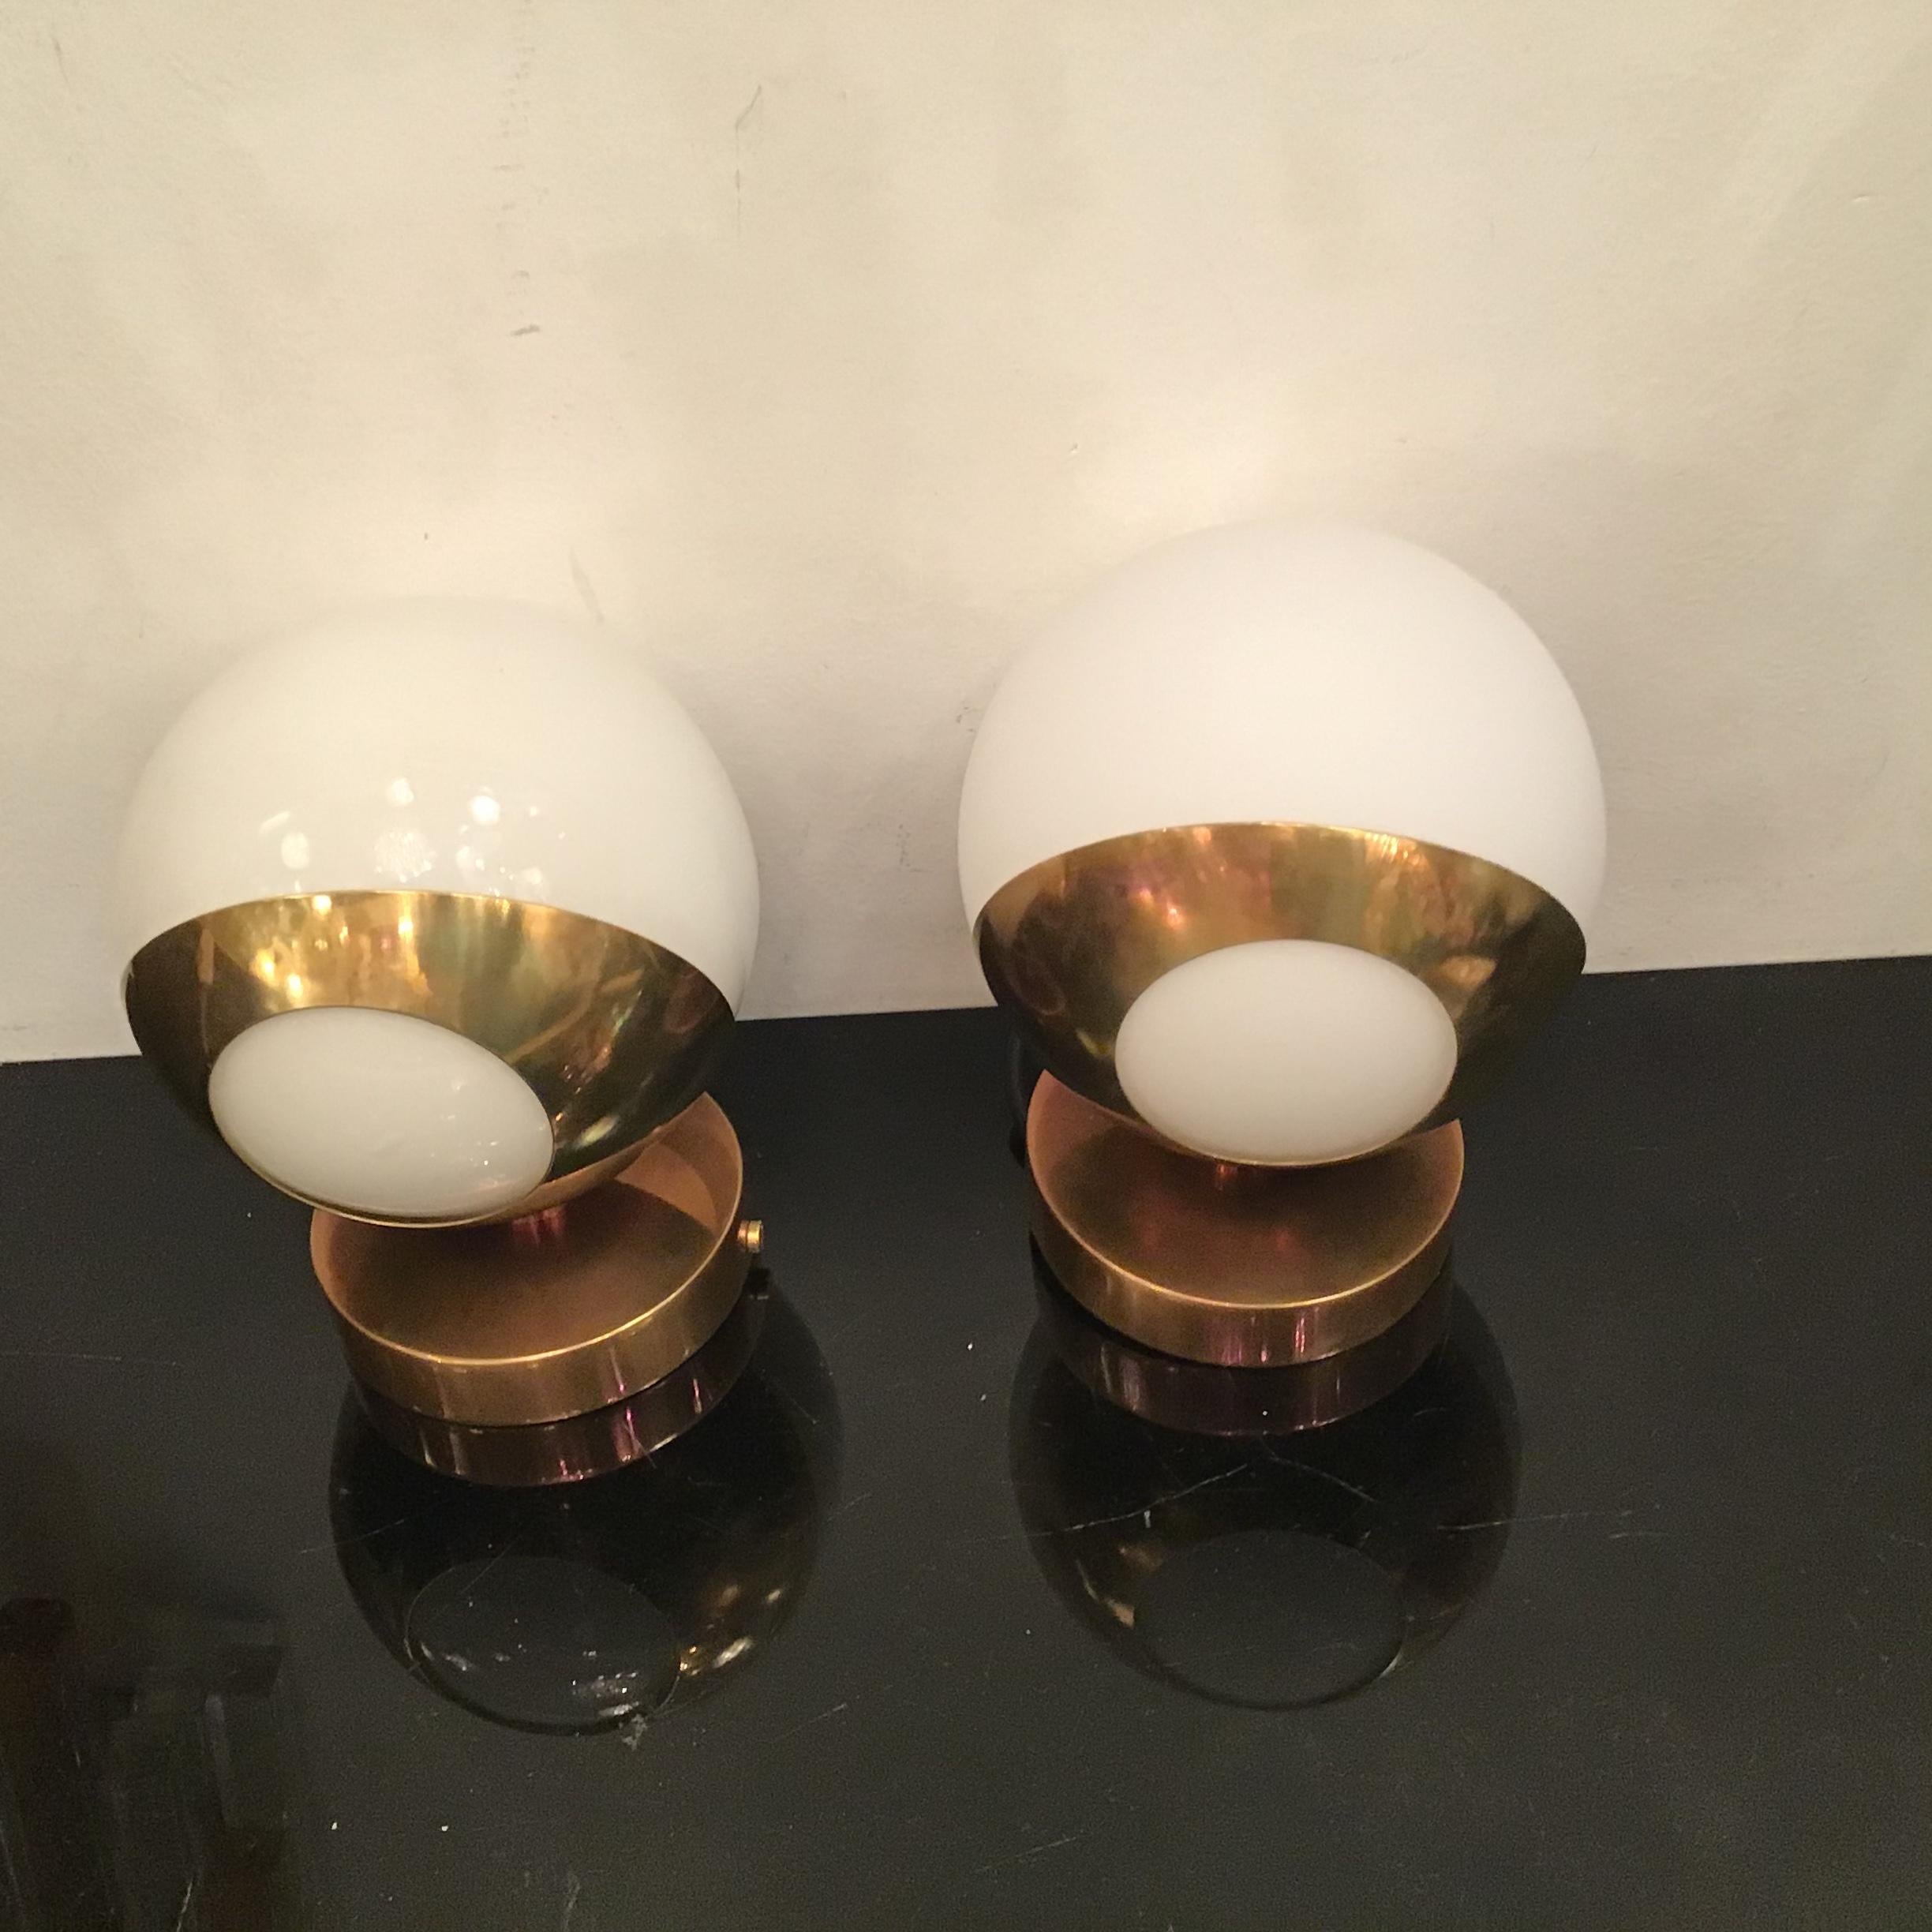 Ein Paar Wandlampen von guter Qualität, hergestellt von der Firma STILNOVO in den 1950er und 1960er Jahren.
Hergestellt in ITALIEN.